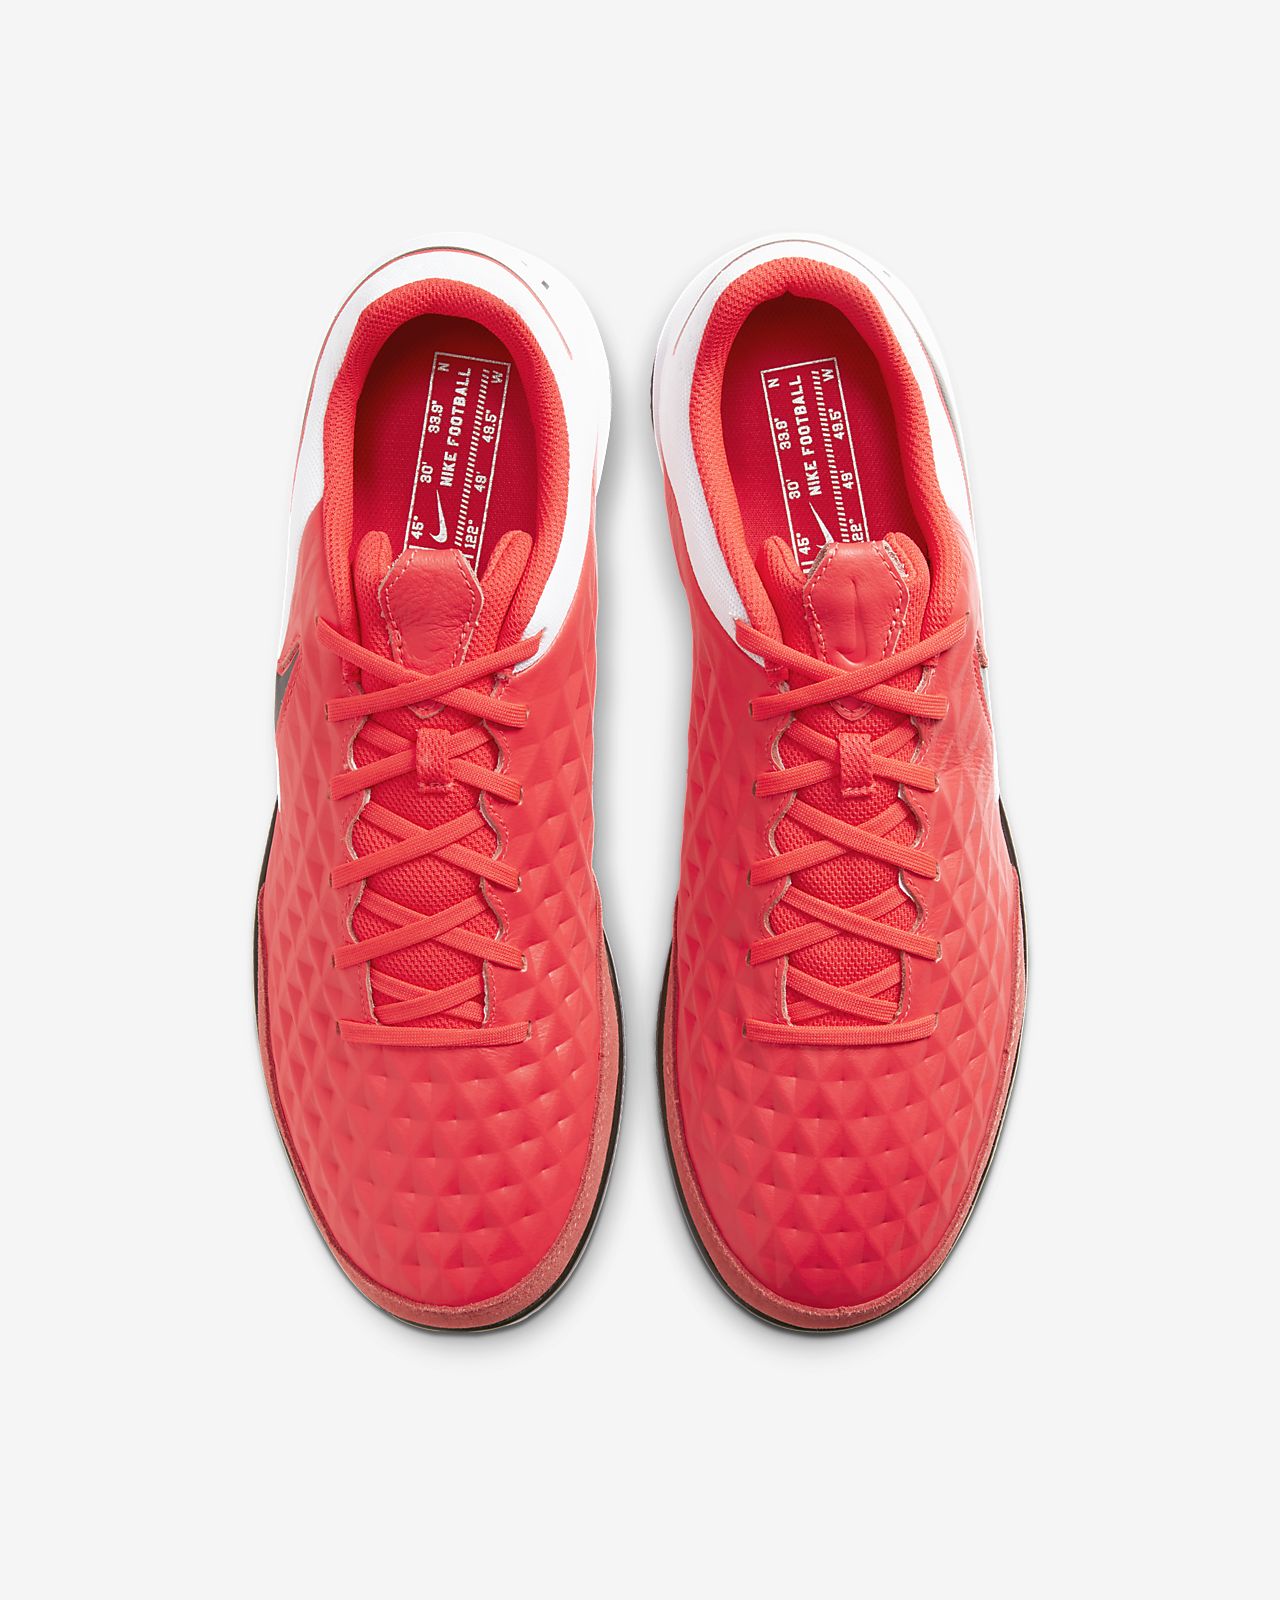 Nike TIEMPO LEGEND 8 ELITE FG rotschwarzweiß Schuhe.